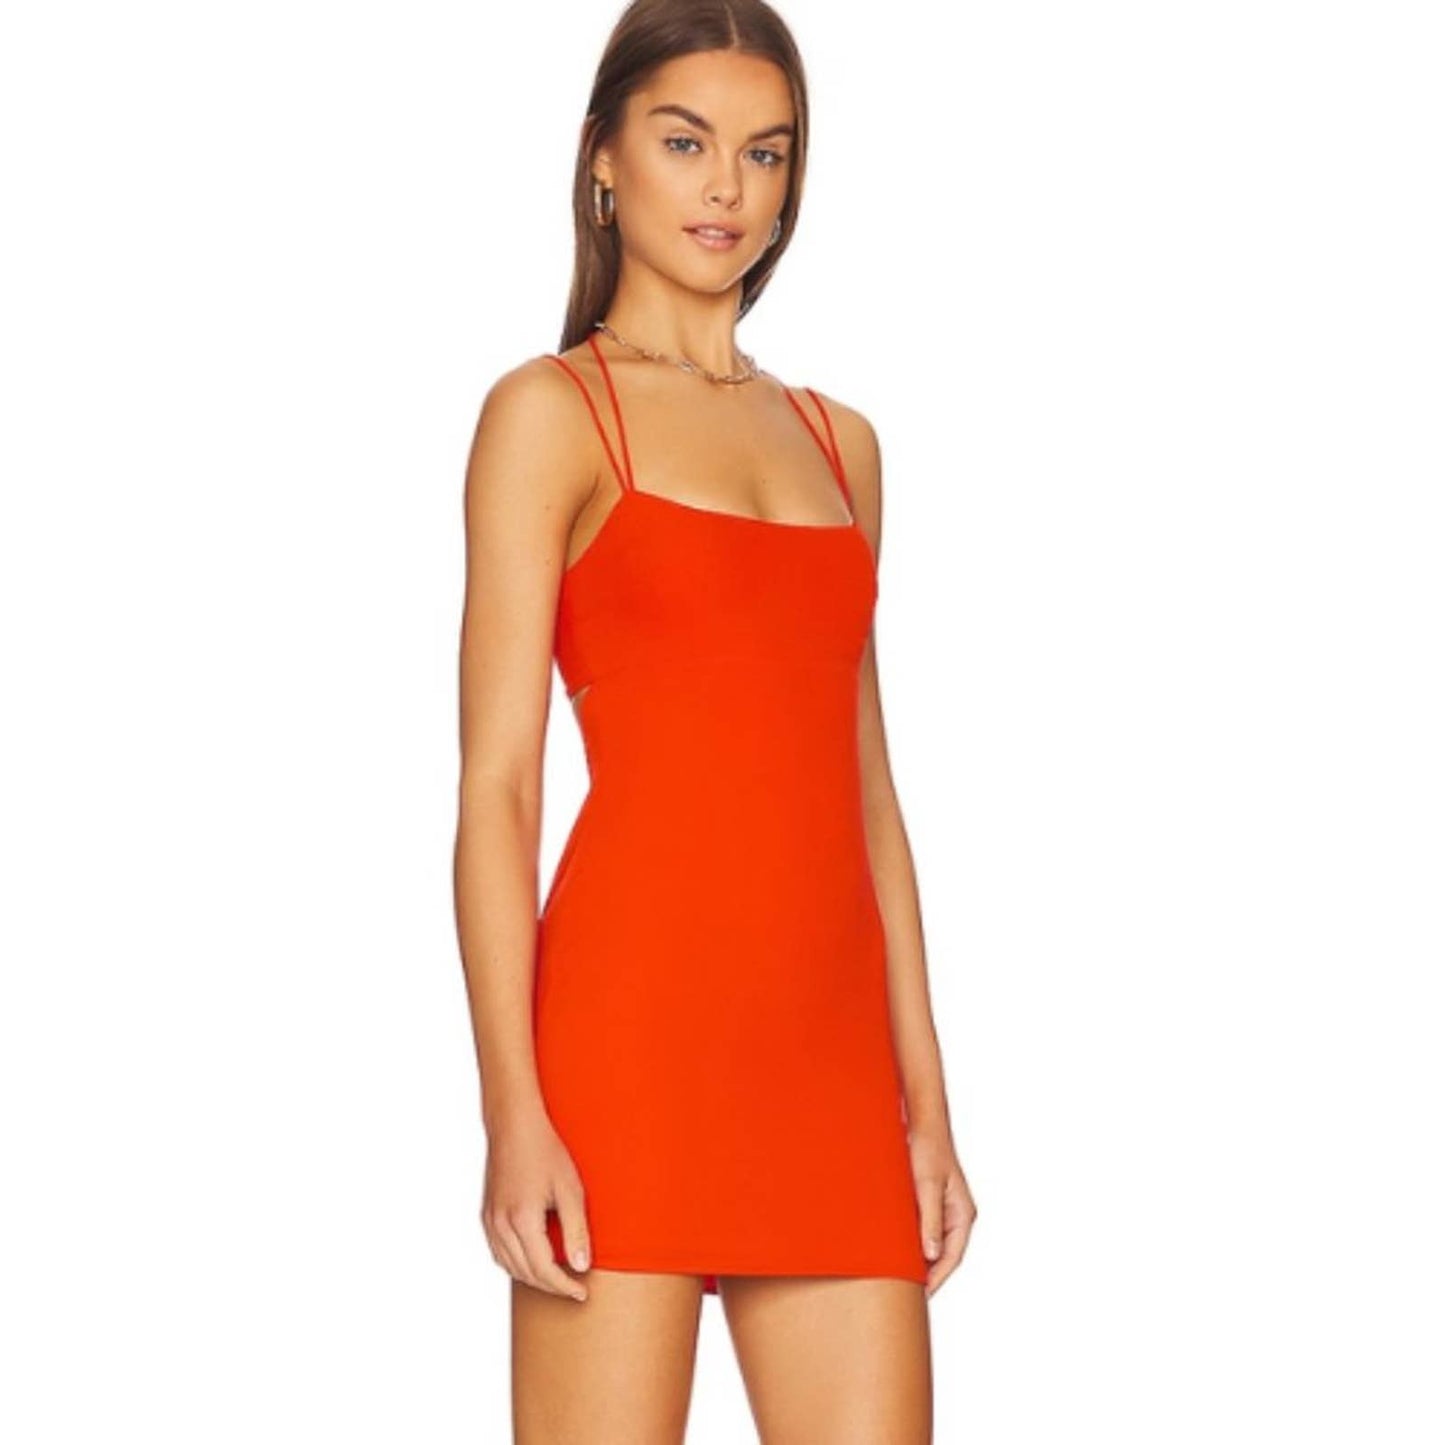 Lovers & Friends Imani Mini Dress in Red NWT Size Medium